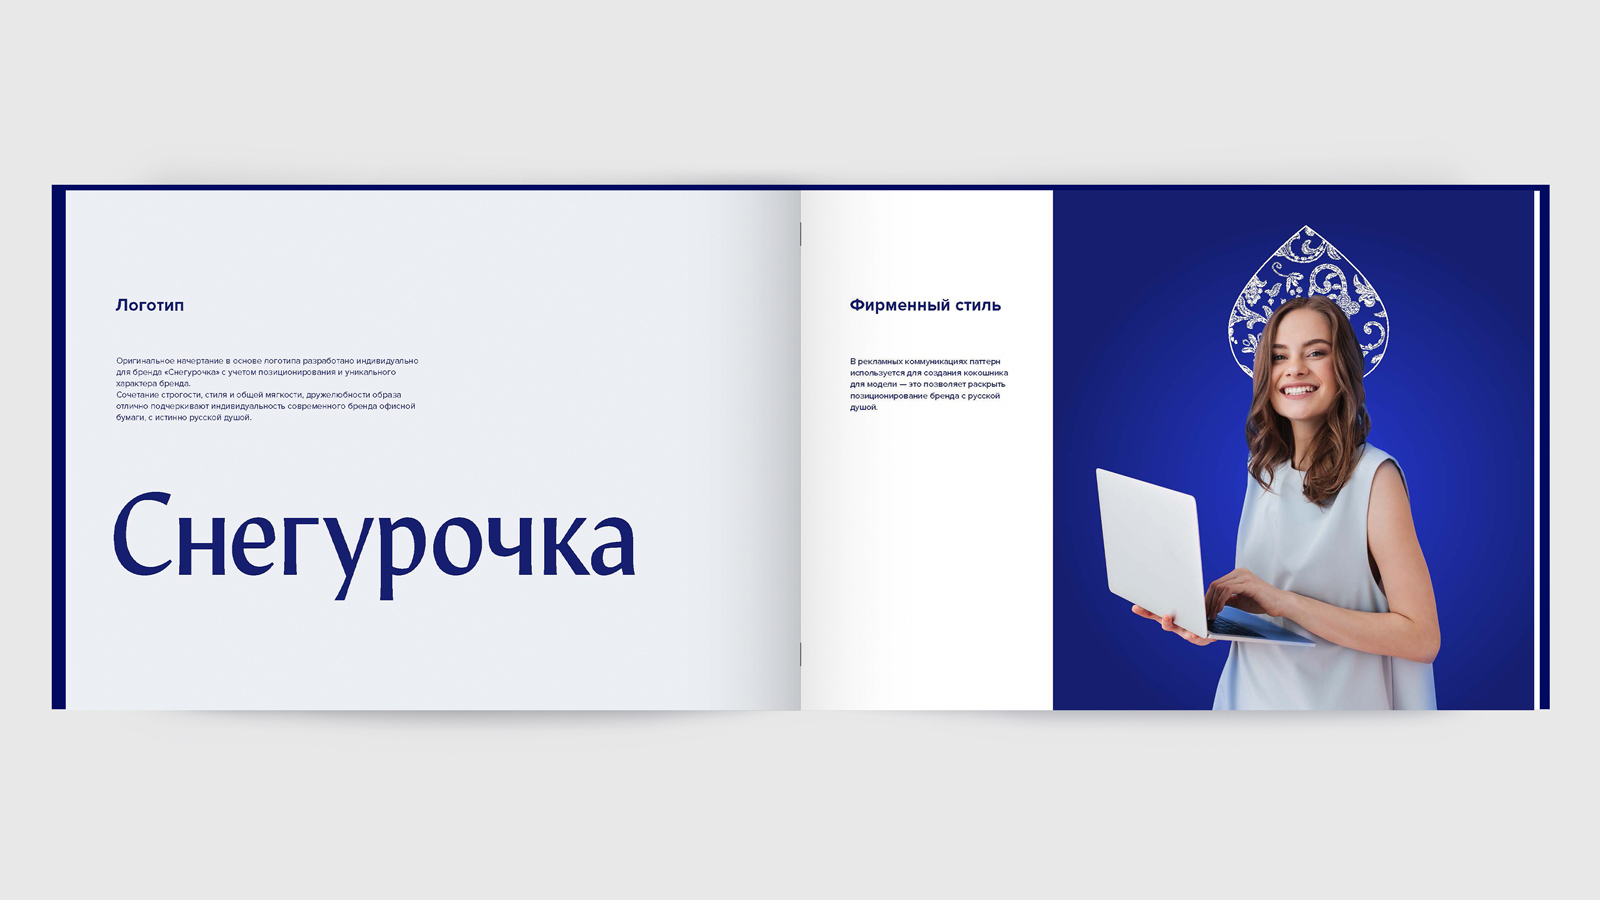 Создание брендбука для бренда офисной бумаги «Снегурочка», который содержит информацию о использовании фирменного стиля